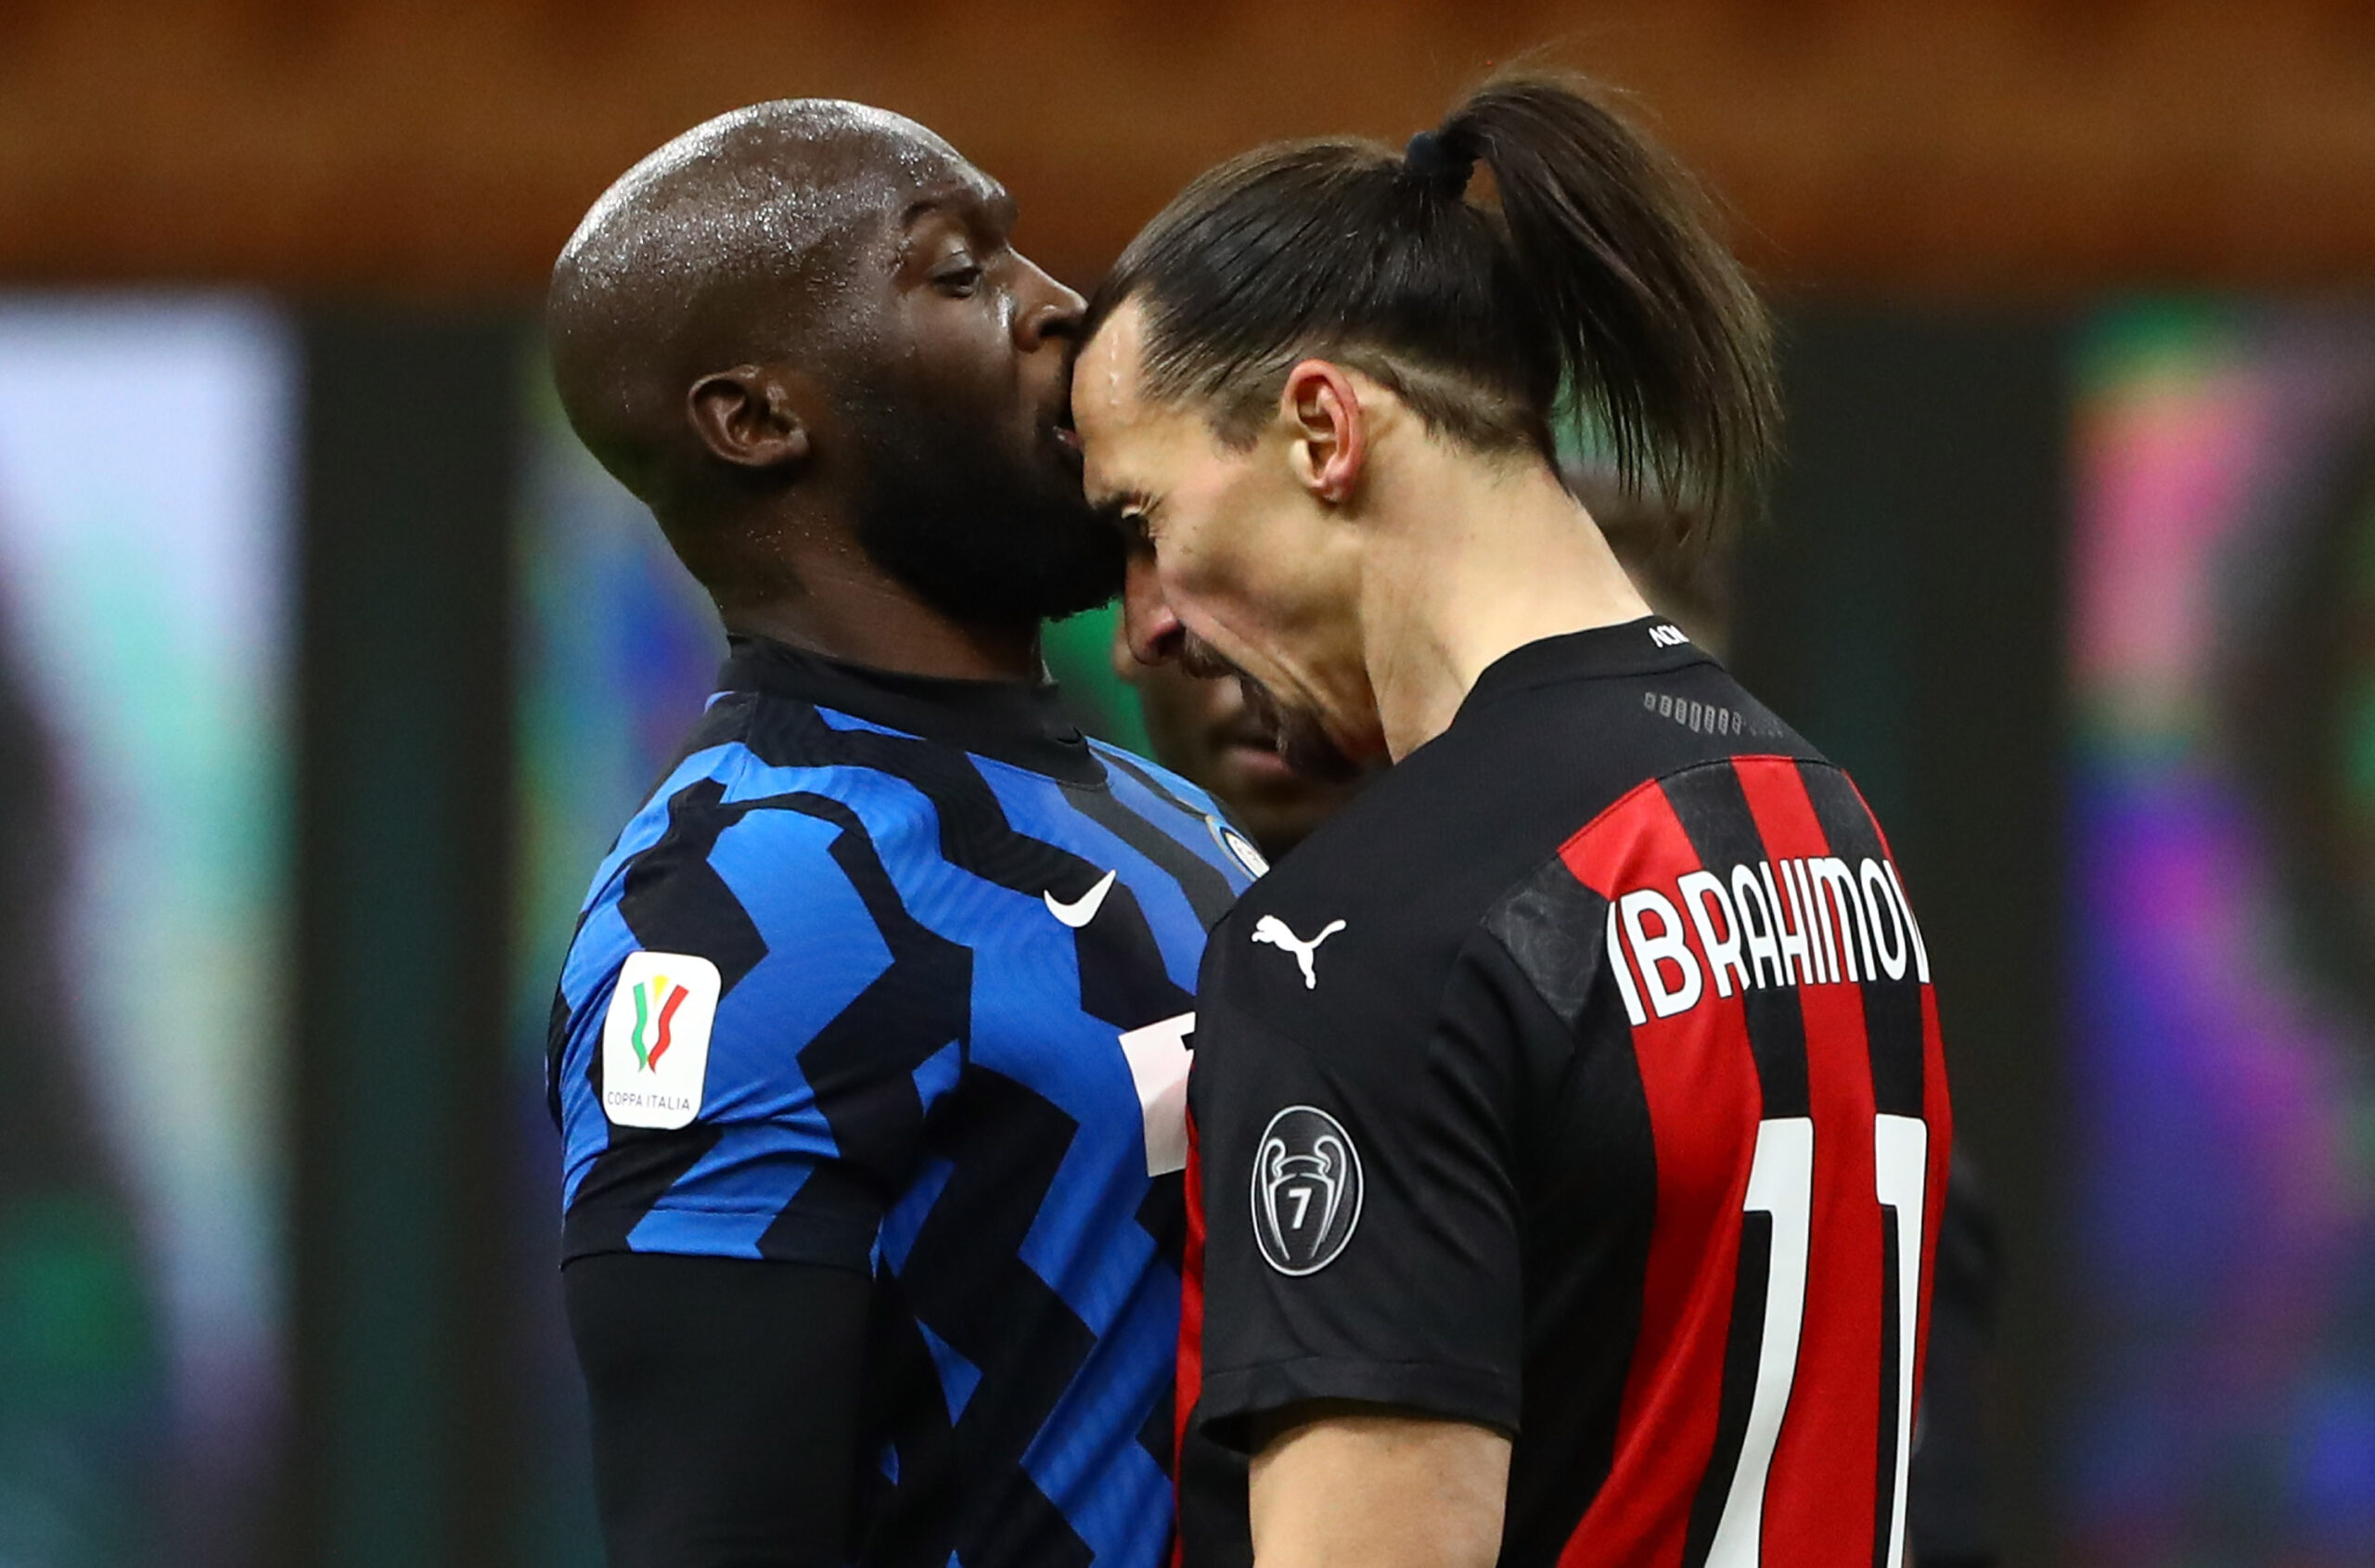 Auseinandersetzung zwischen Lukaku und Ibrahimovic – Beide Stürmer gesperrt